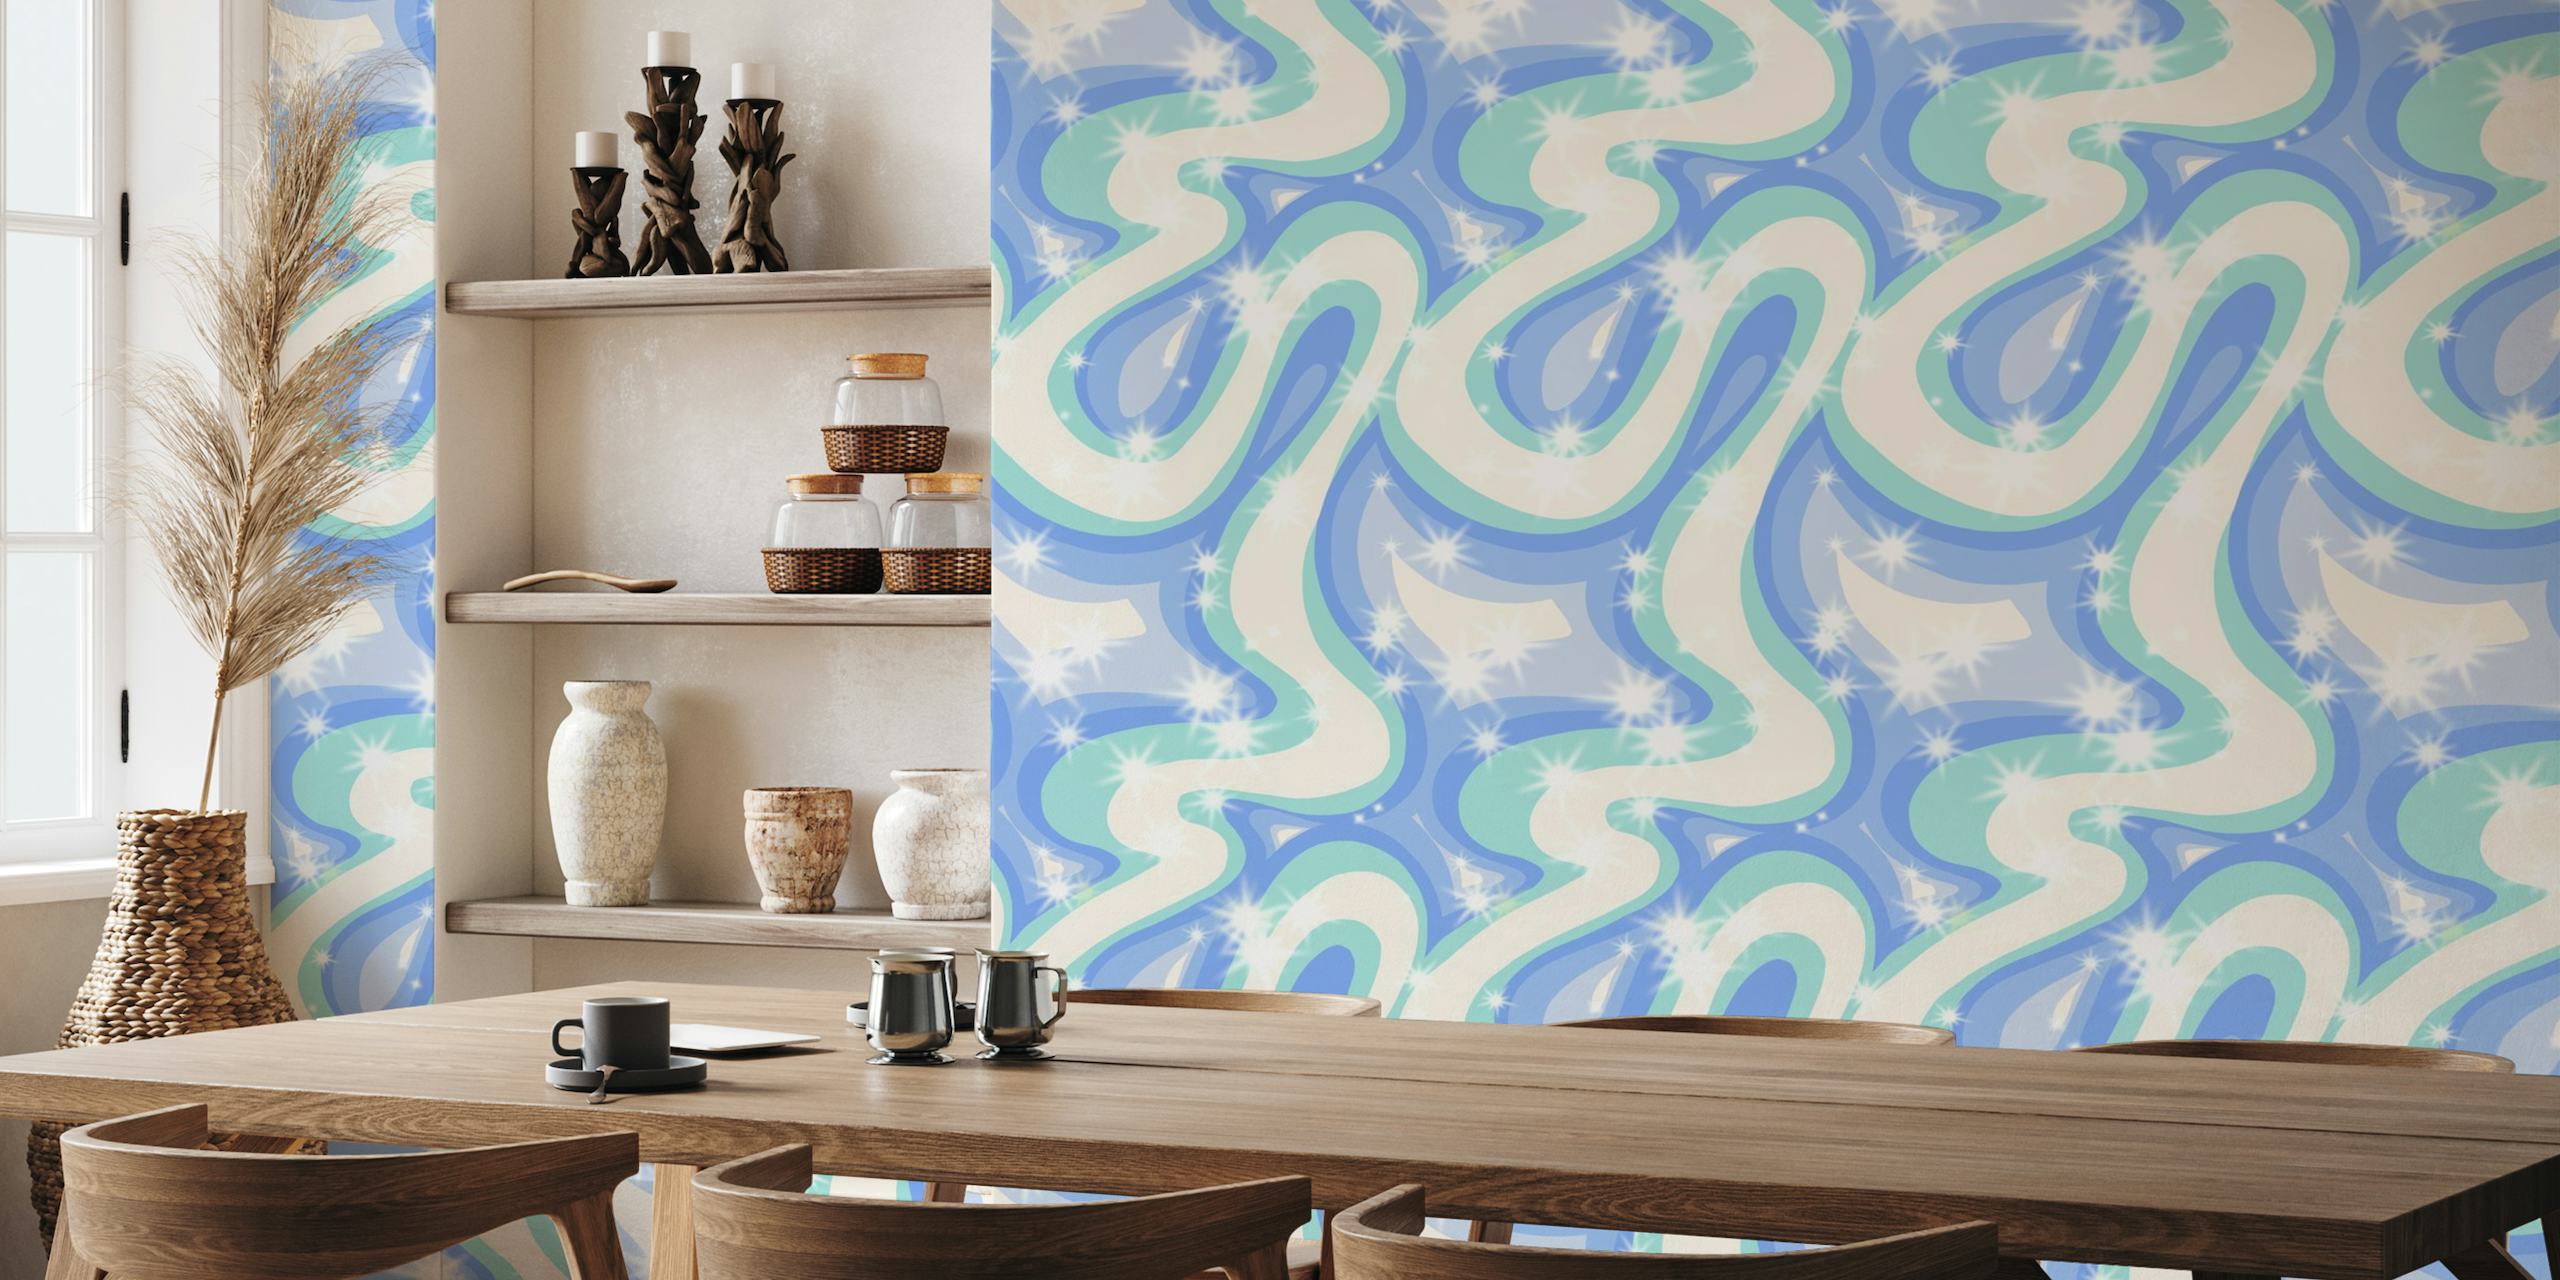 Groovy retro swirls blue wallpaper